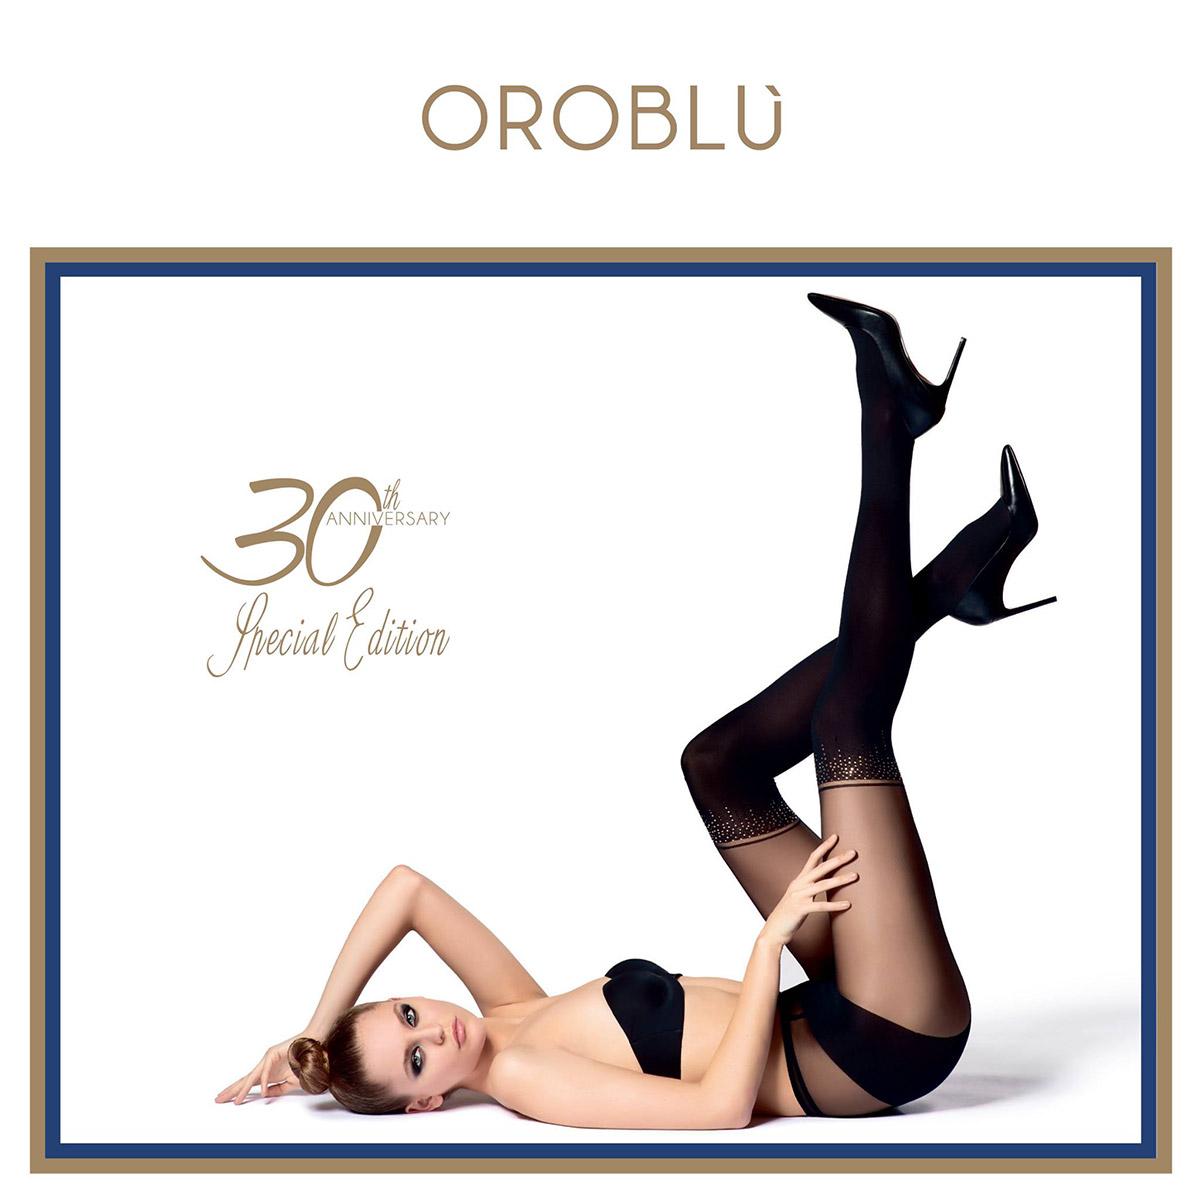 Итальянскому бренду OROBLU исполнилось 30 лет!